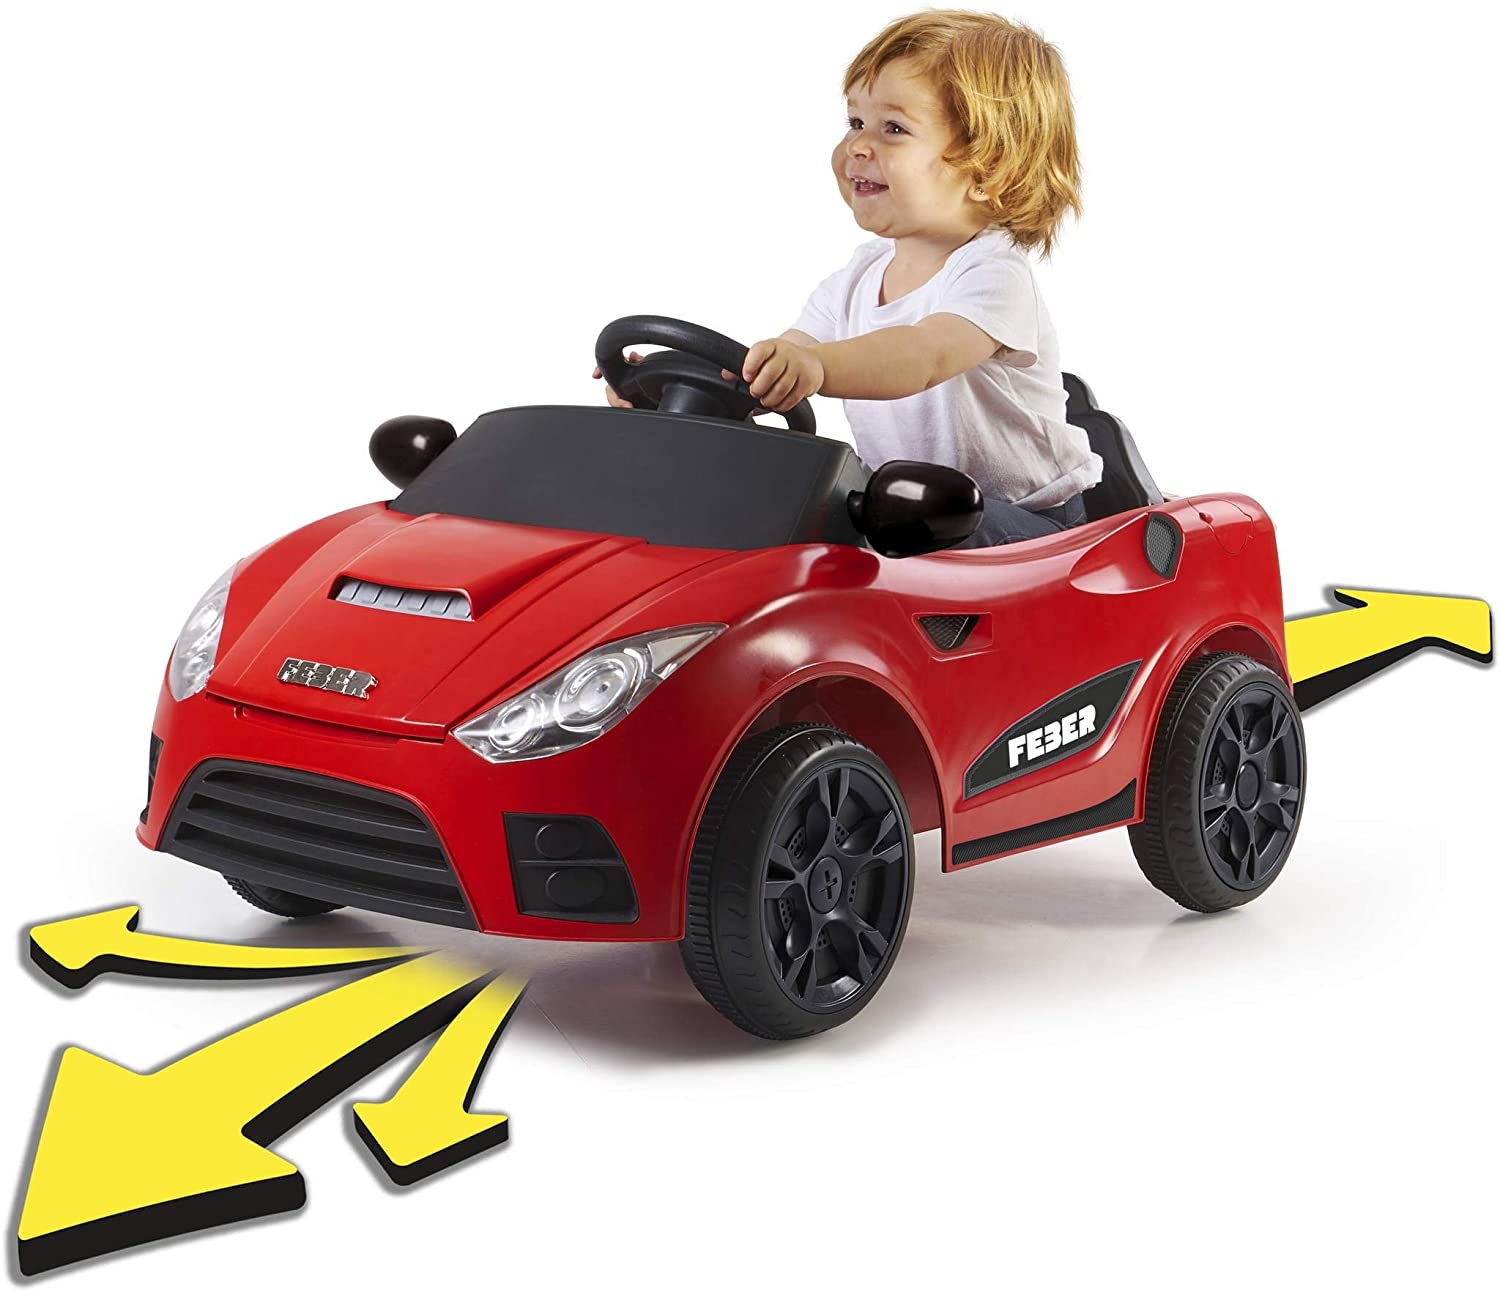 FEBER - My Real Car, interaktivní bateriové elektrické autíčko pro děti od 18 měsíců do 4 let